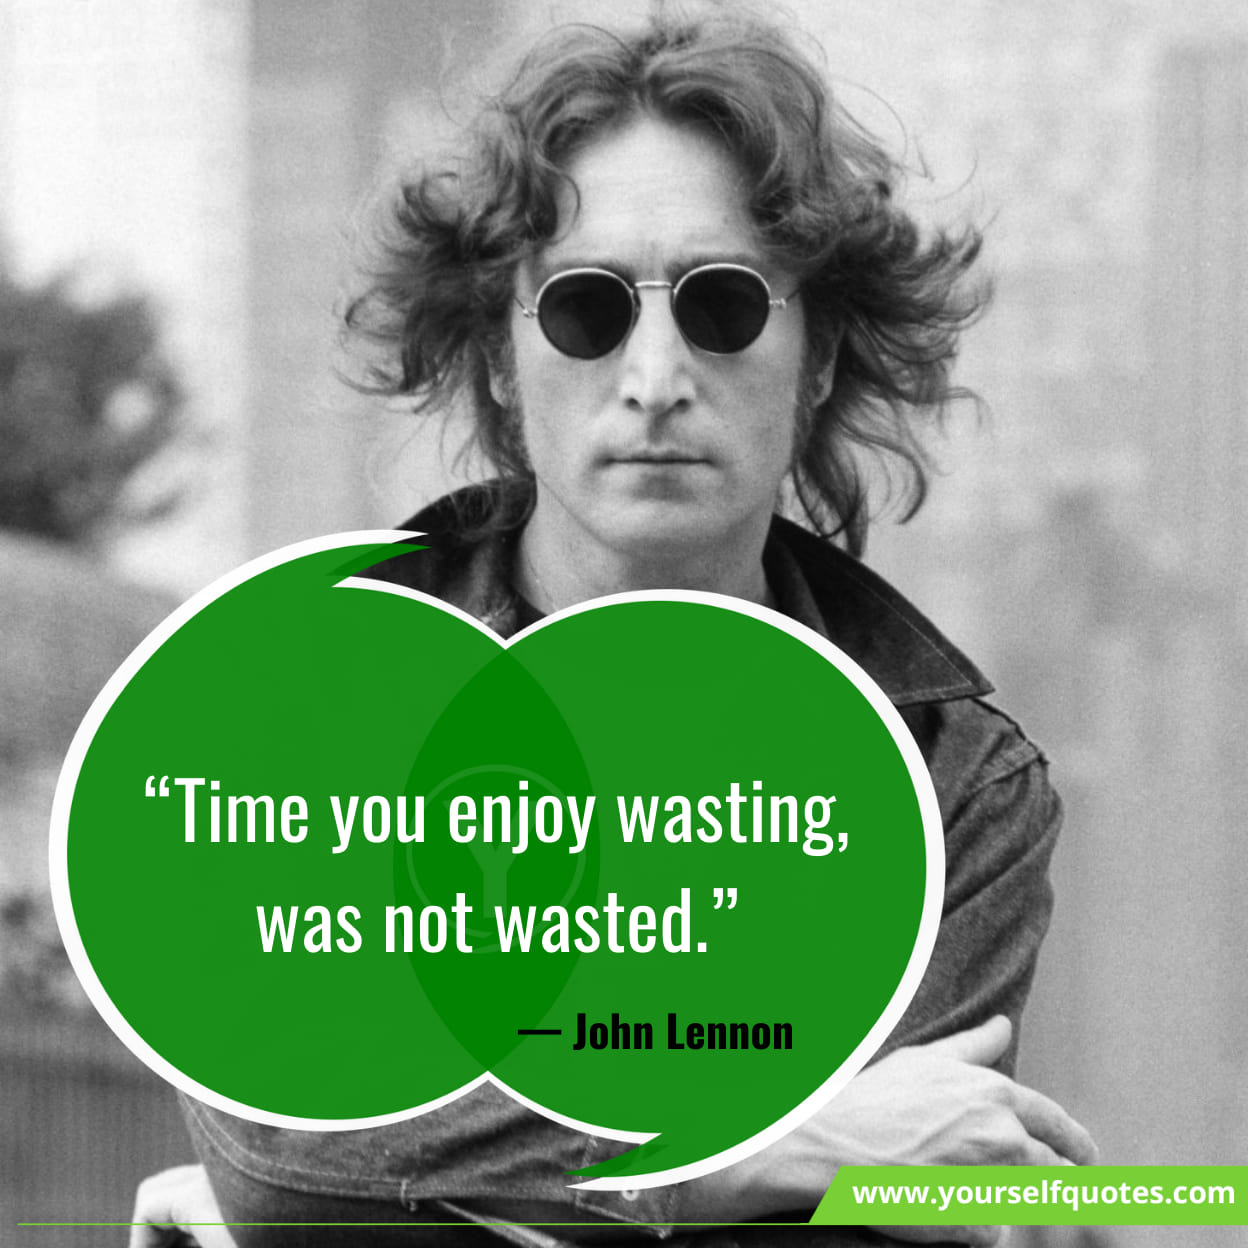 Inspiring John Lennon Quotes